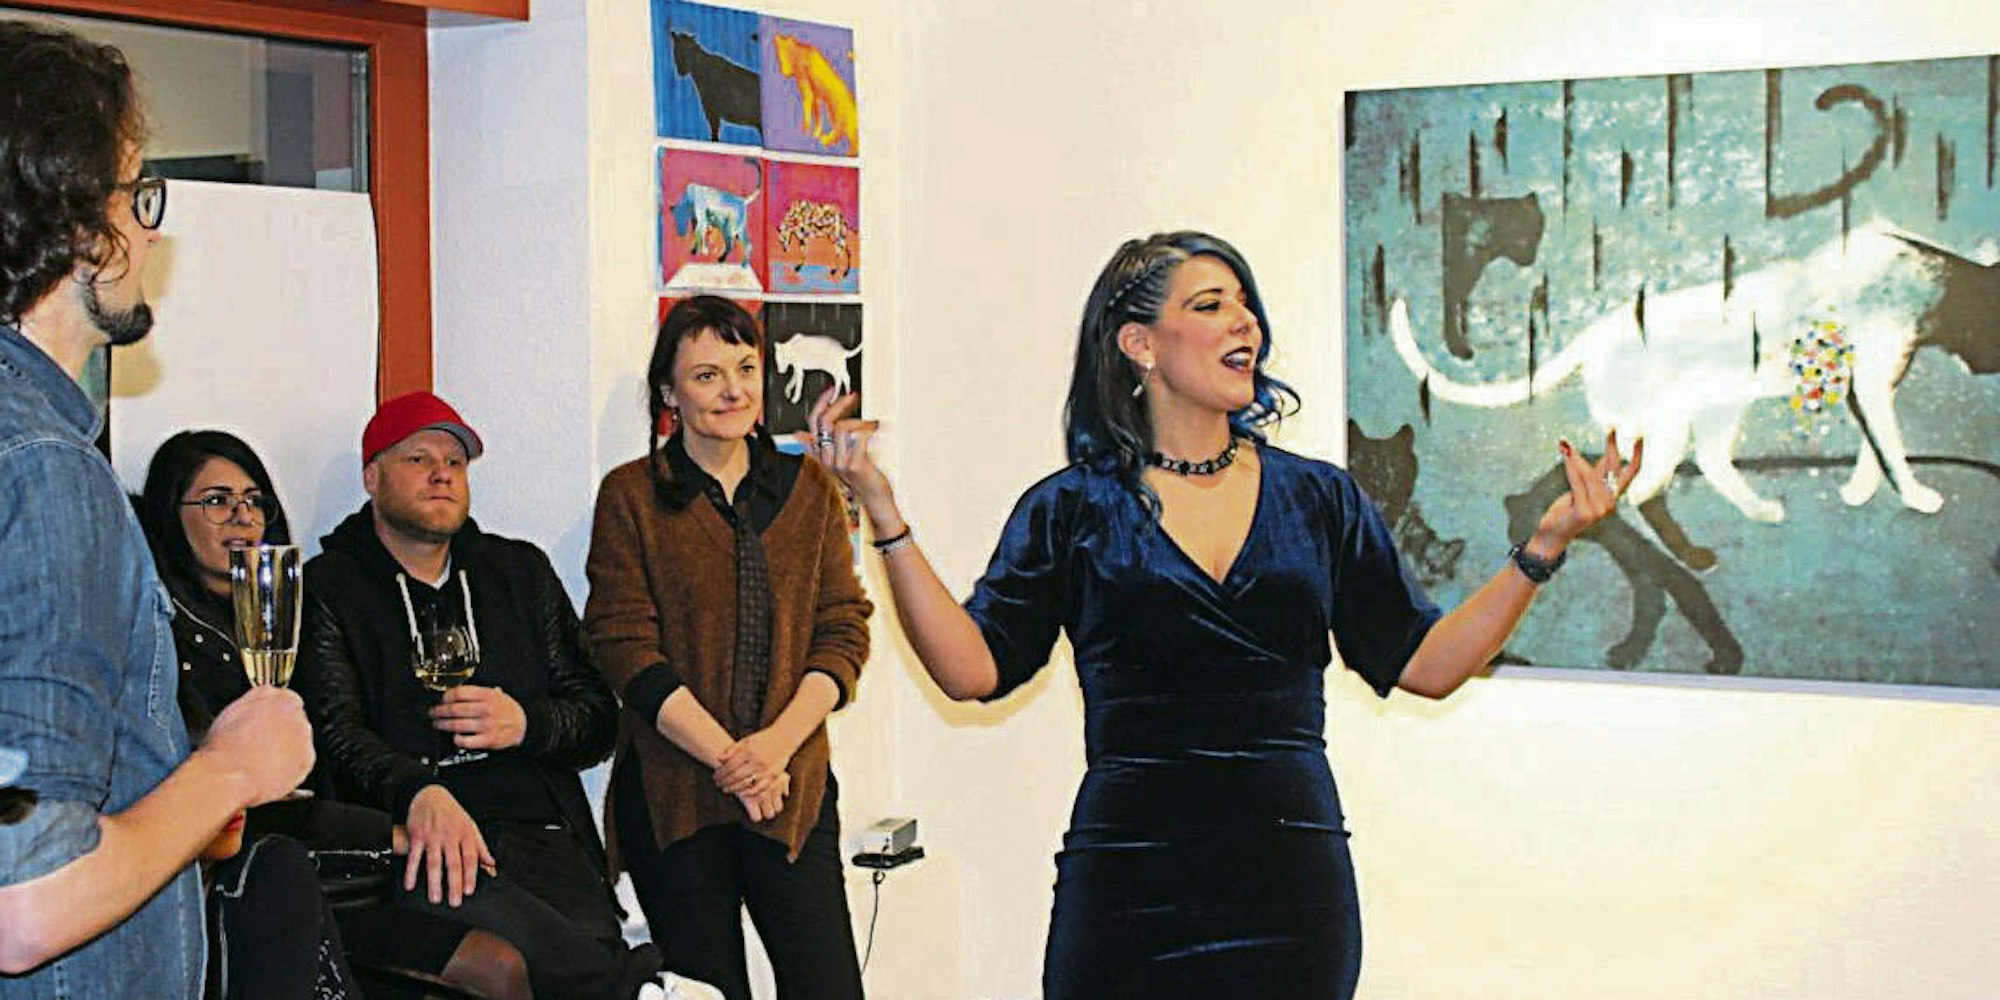 Ein Werk von Mauro Toro (Bild oben), Galeristin Gretta Hinojosa bei ihrer Eröffnungsrede (unten l.), ein Großkatzen-Bild von Hugo Troffaes (r.)